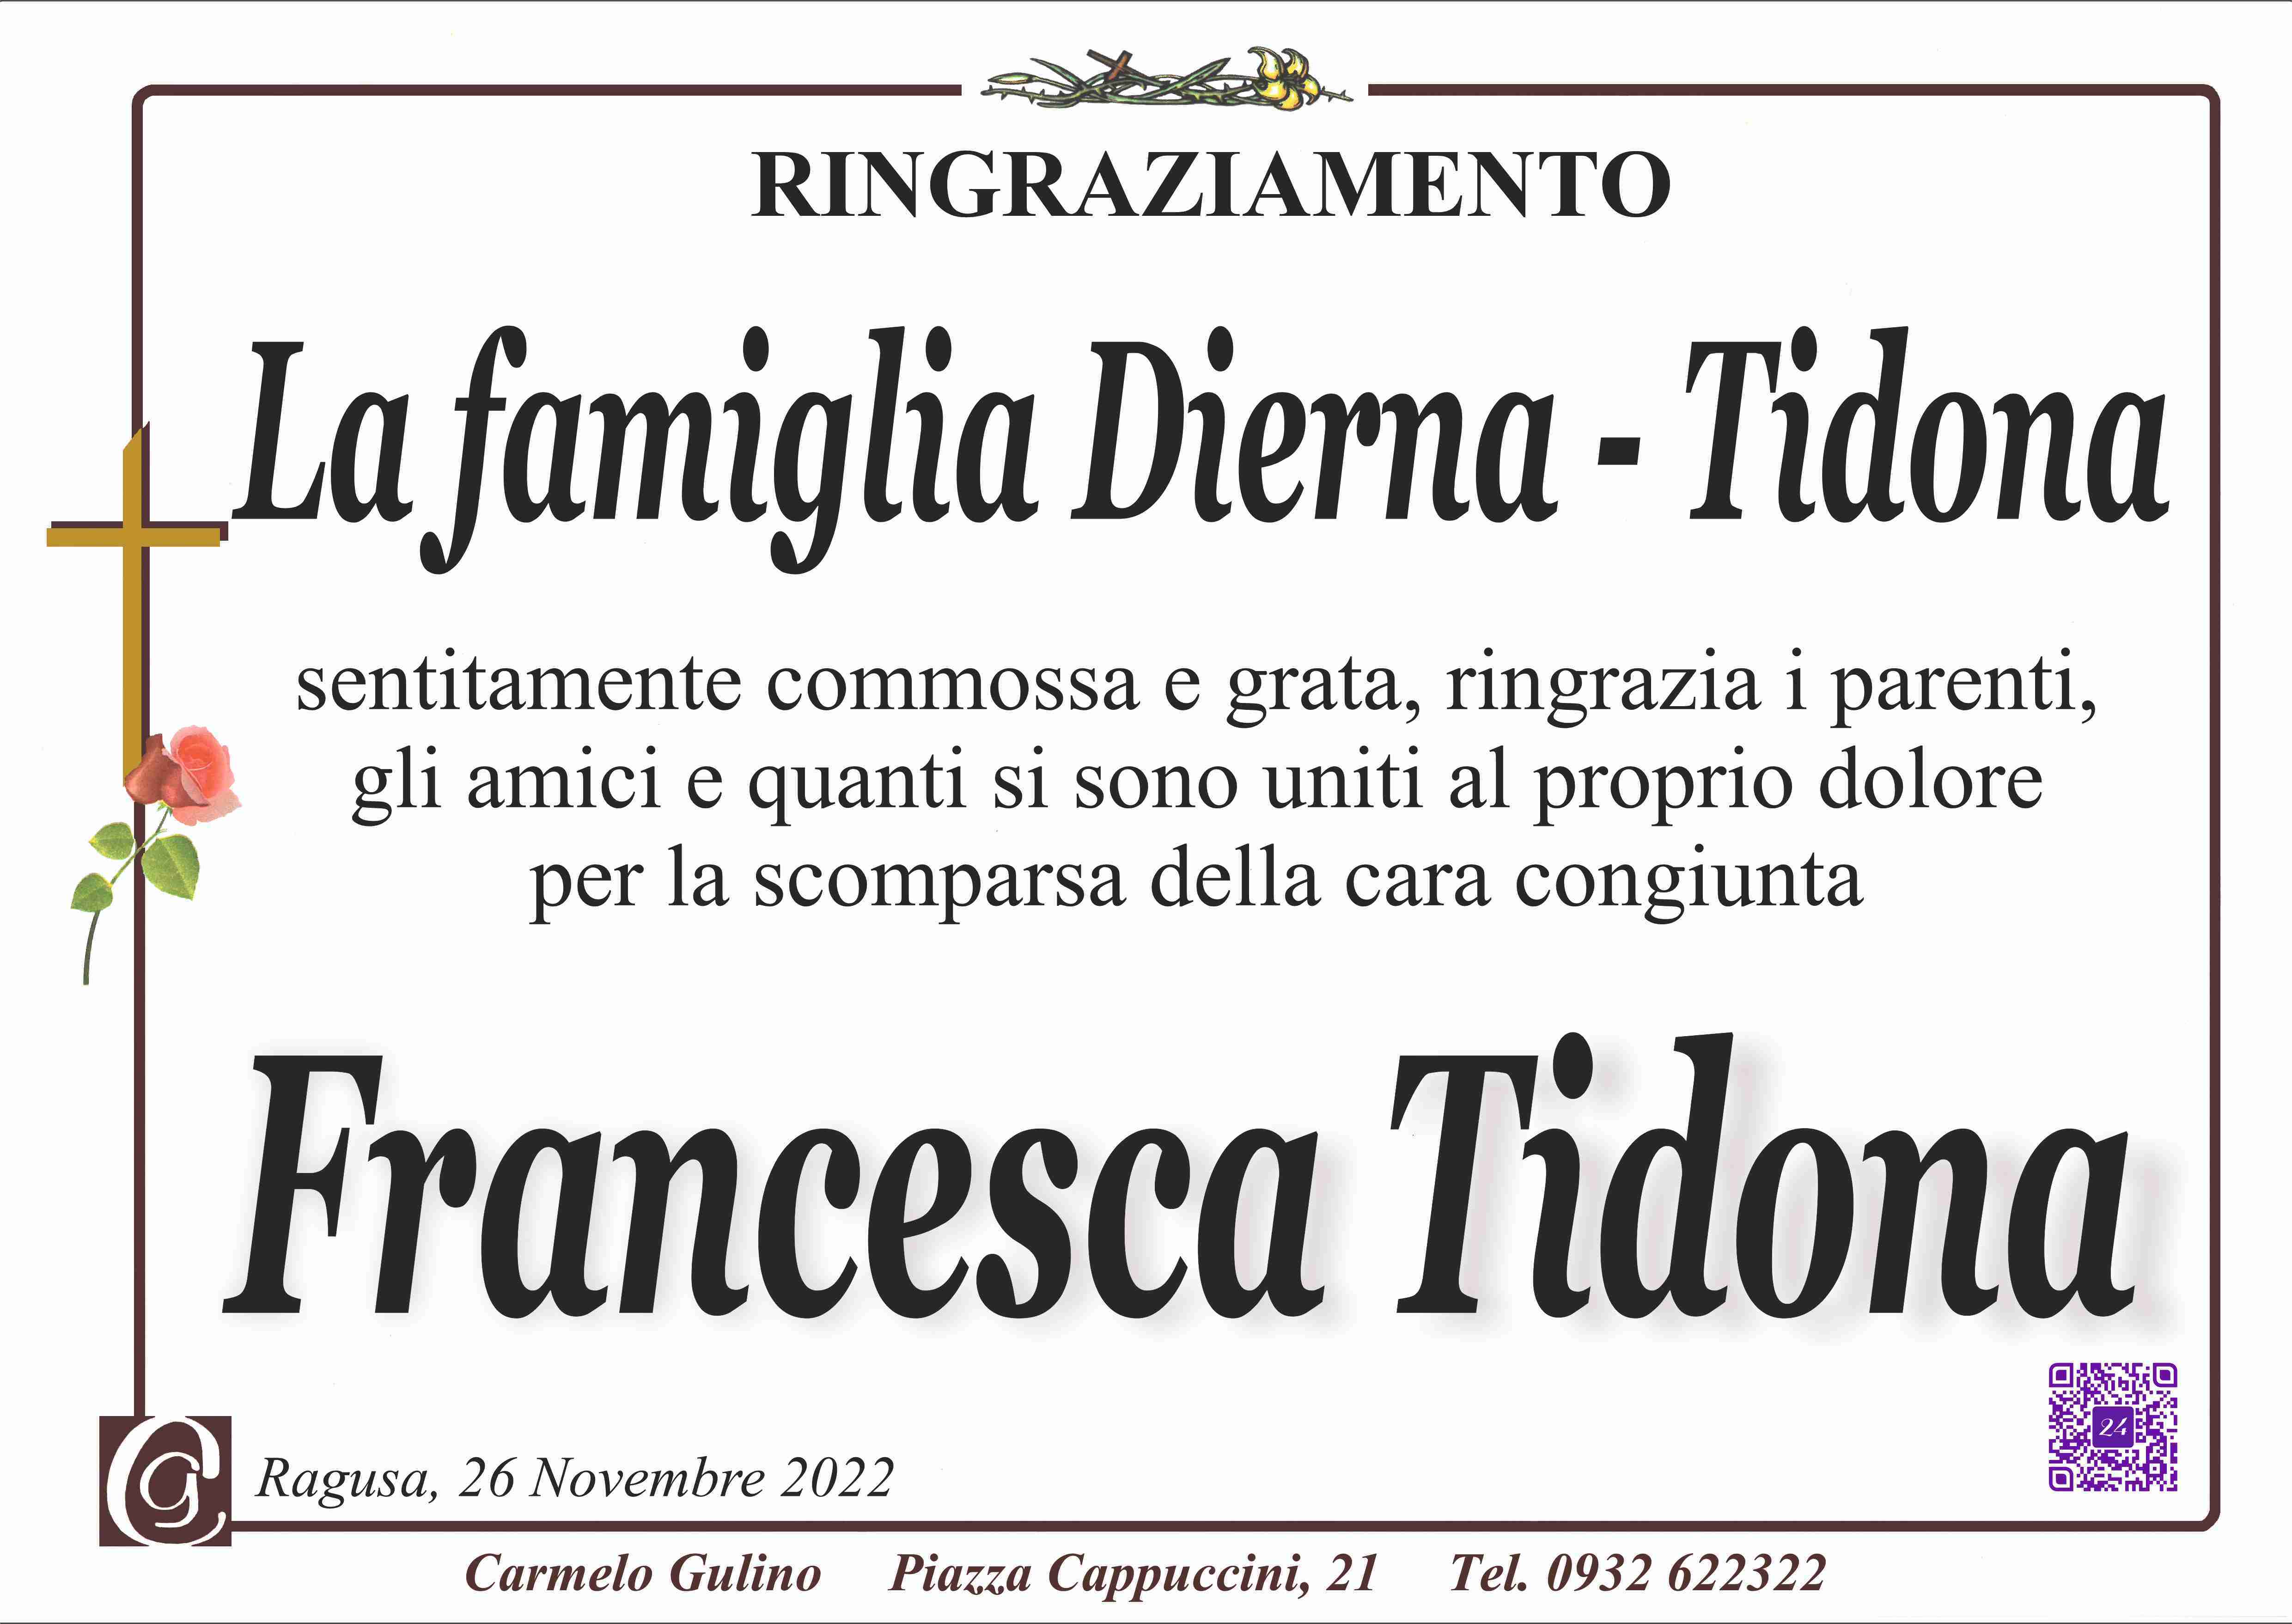 Francesca Tidona